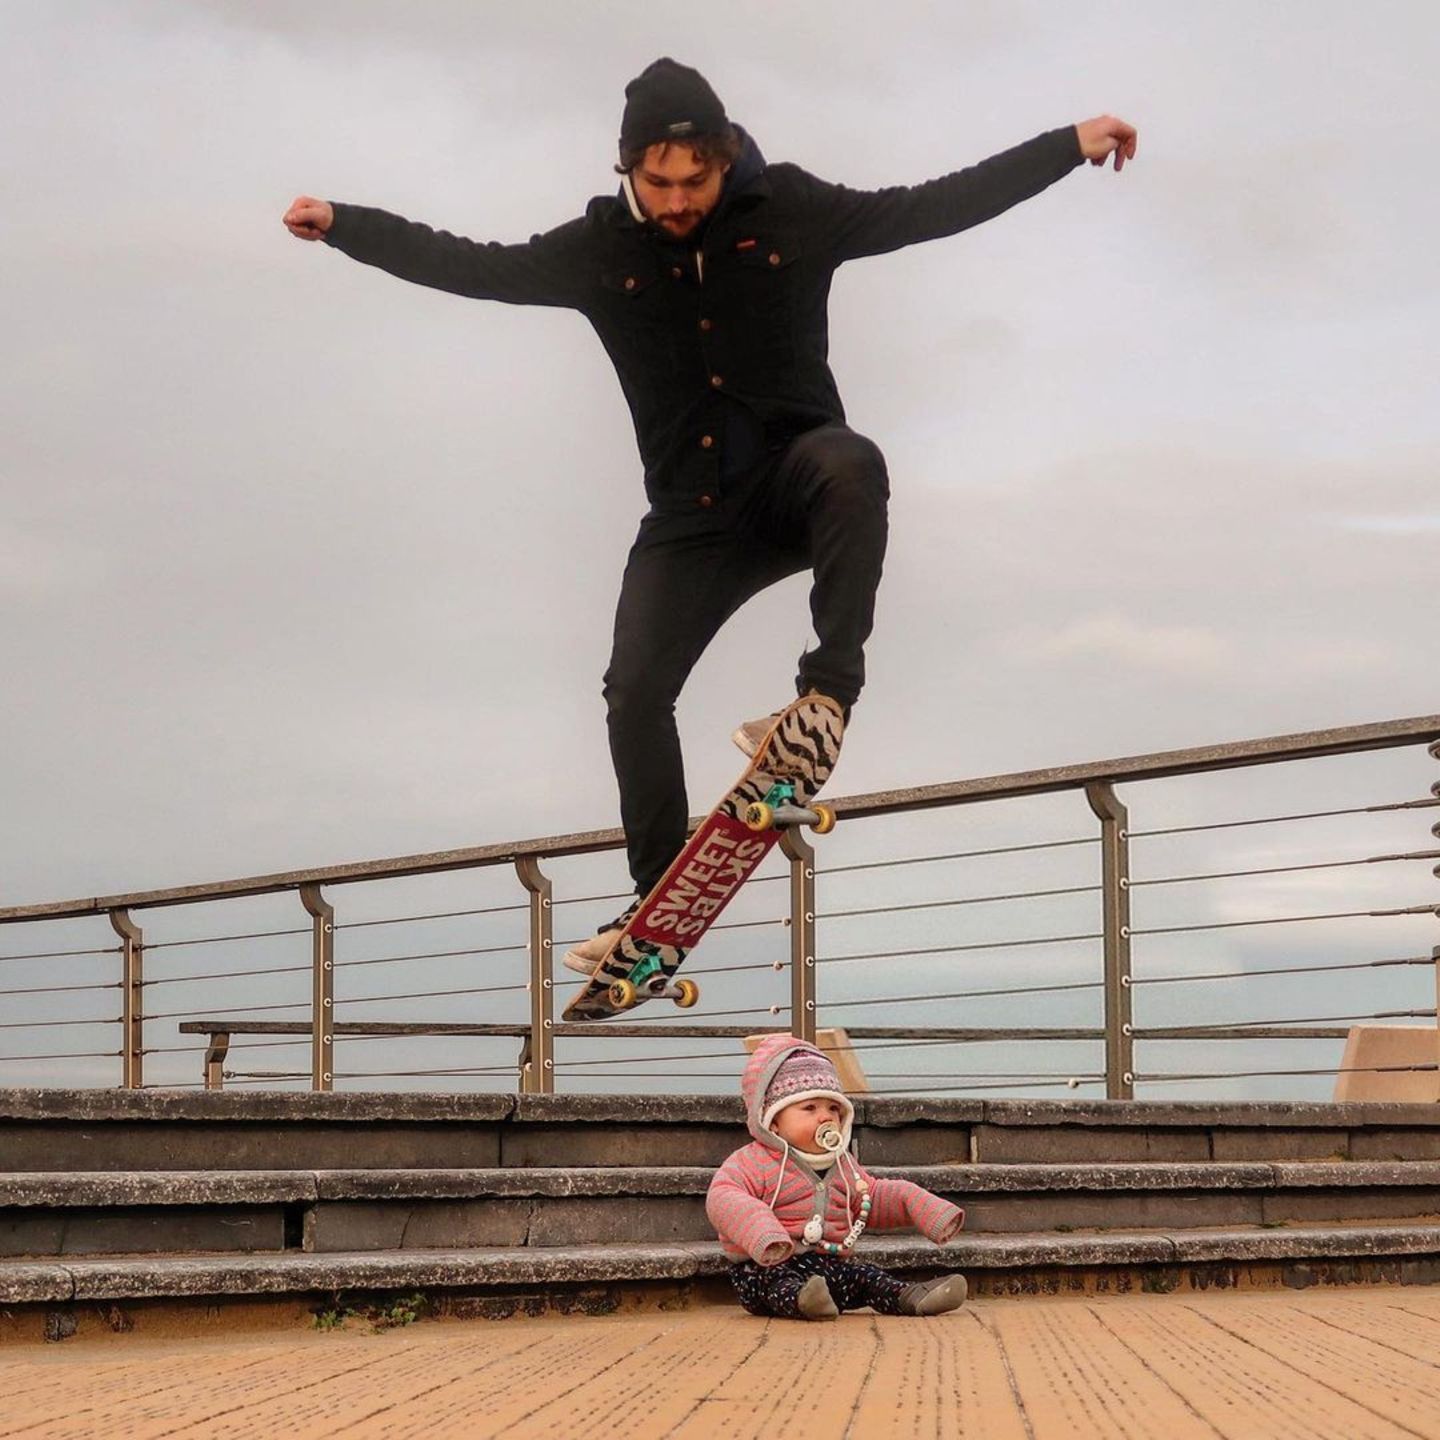 Abenteuerliche Babyfotos: Vater springt auf Skateboard